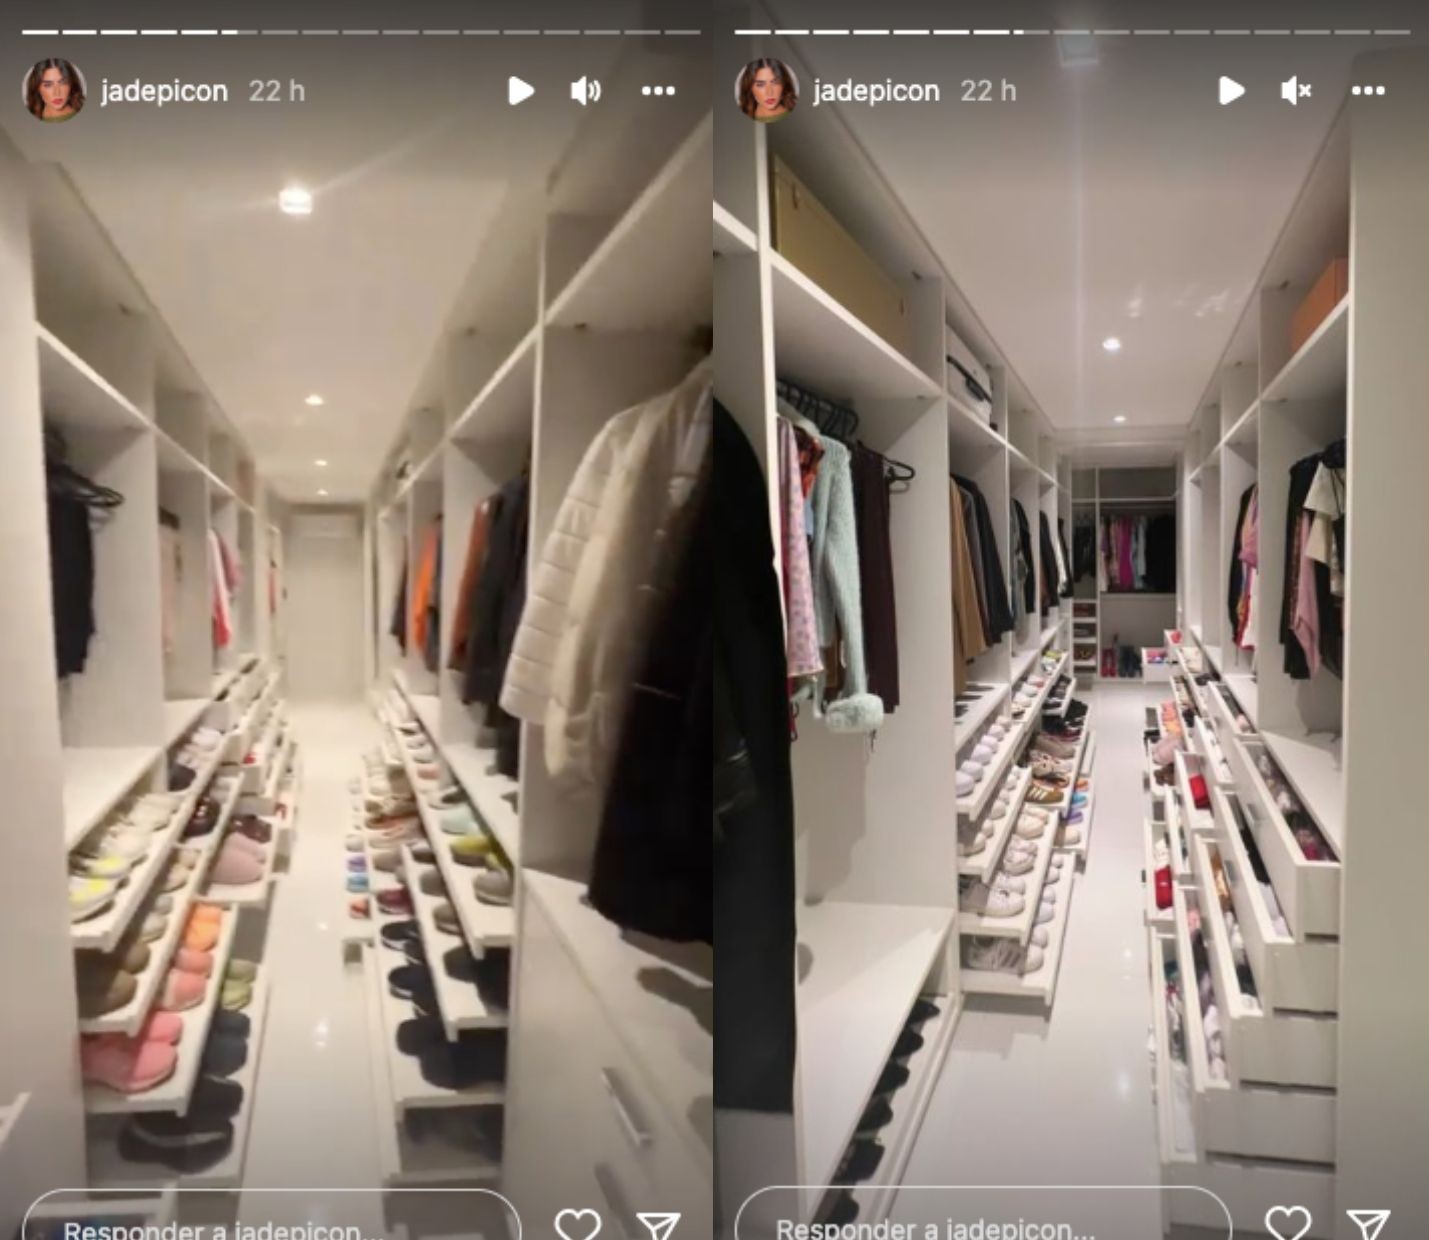 Jade Picon mostra closet organizado (Reprodução/Instagram)